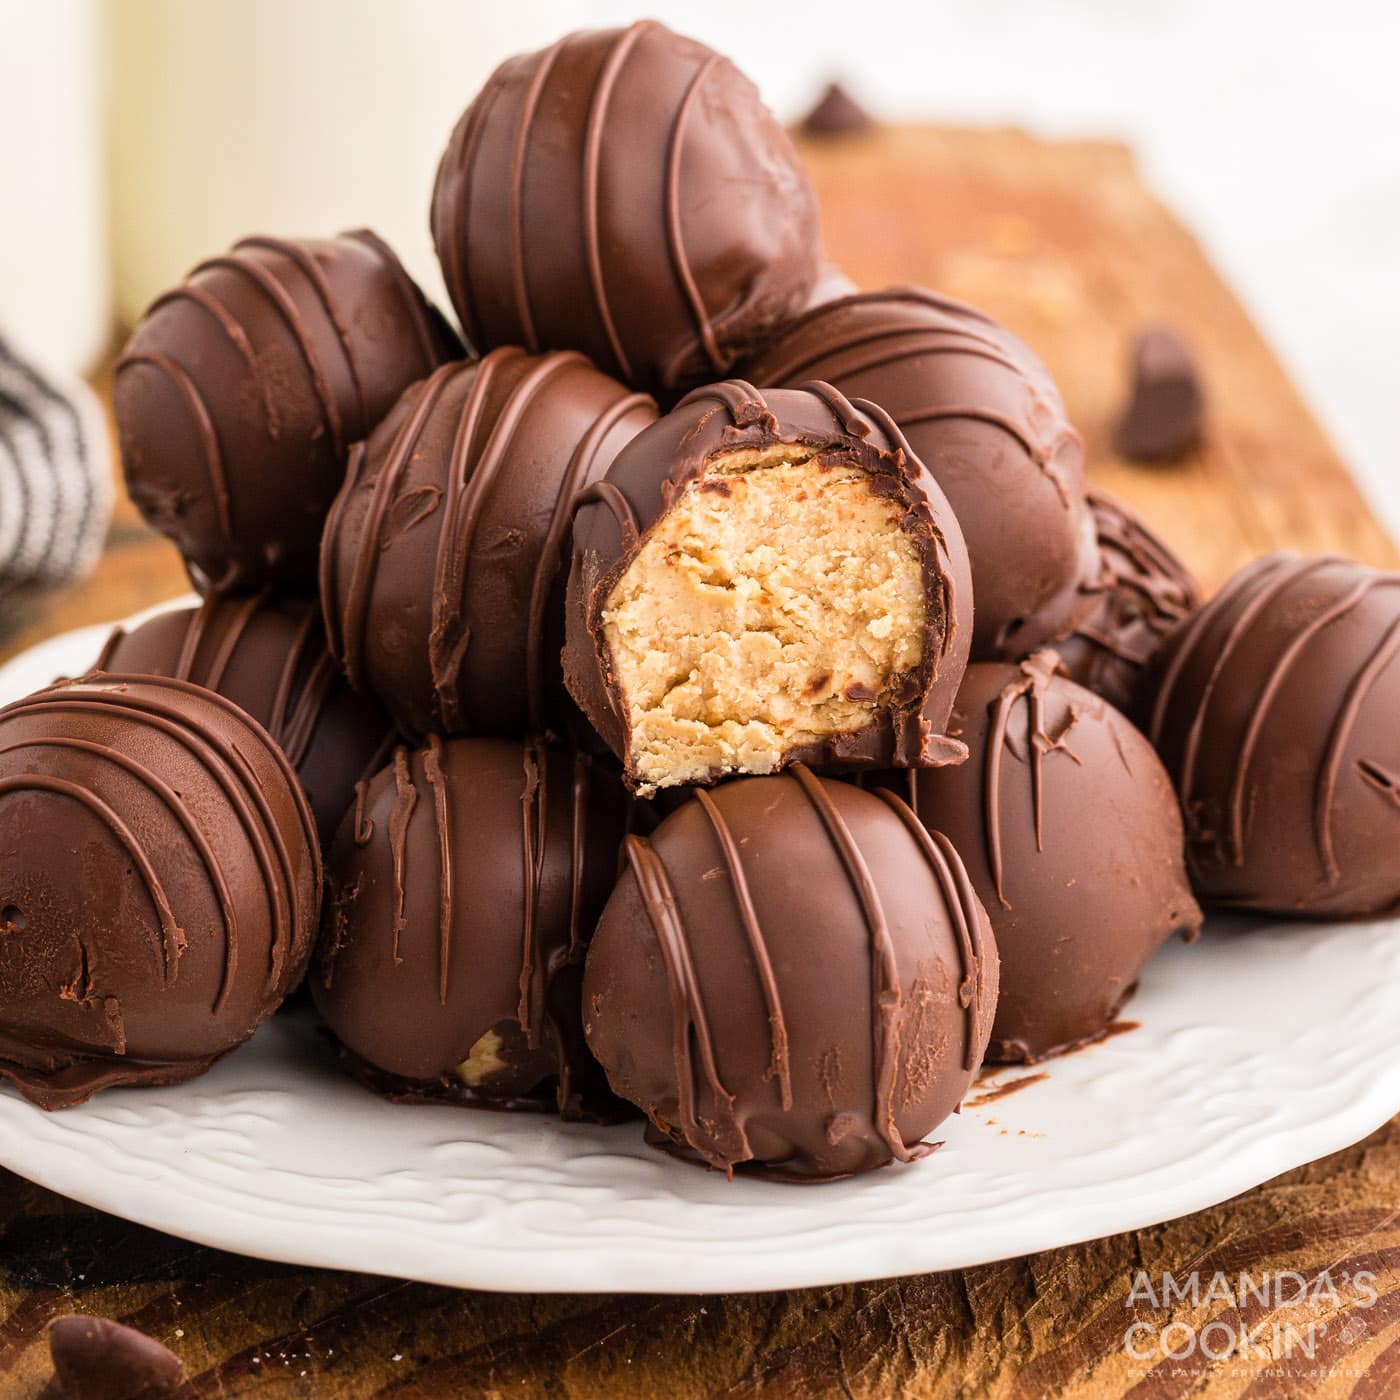 Chocolate Peanut Butter Balls Amandas Cookin No Bake Desserts